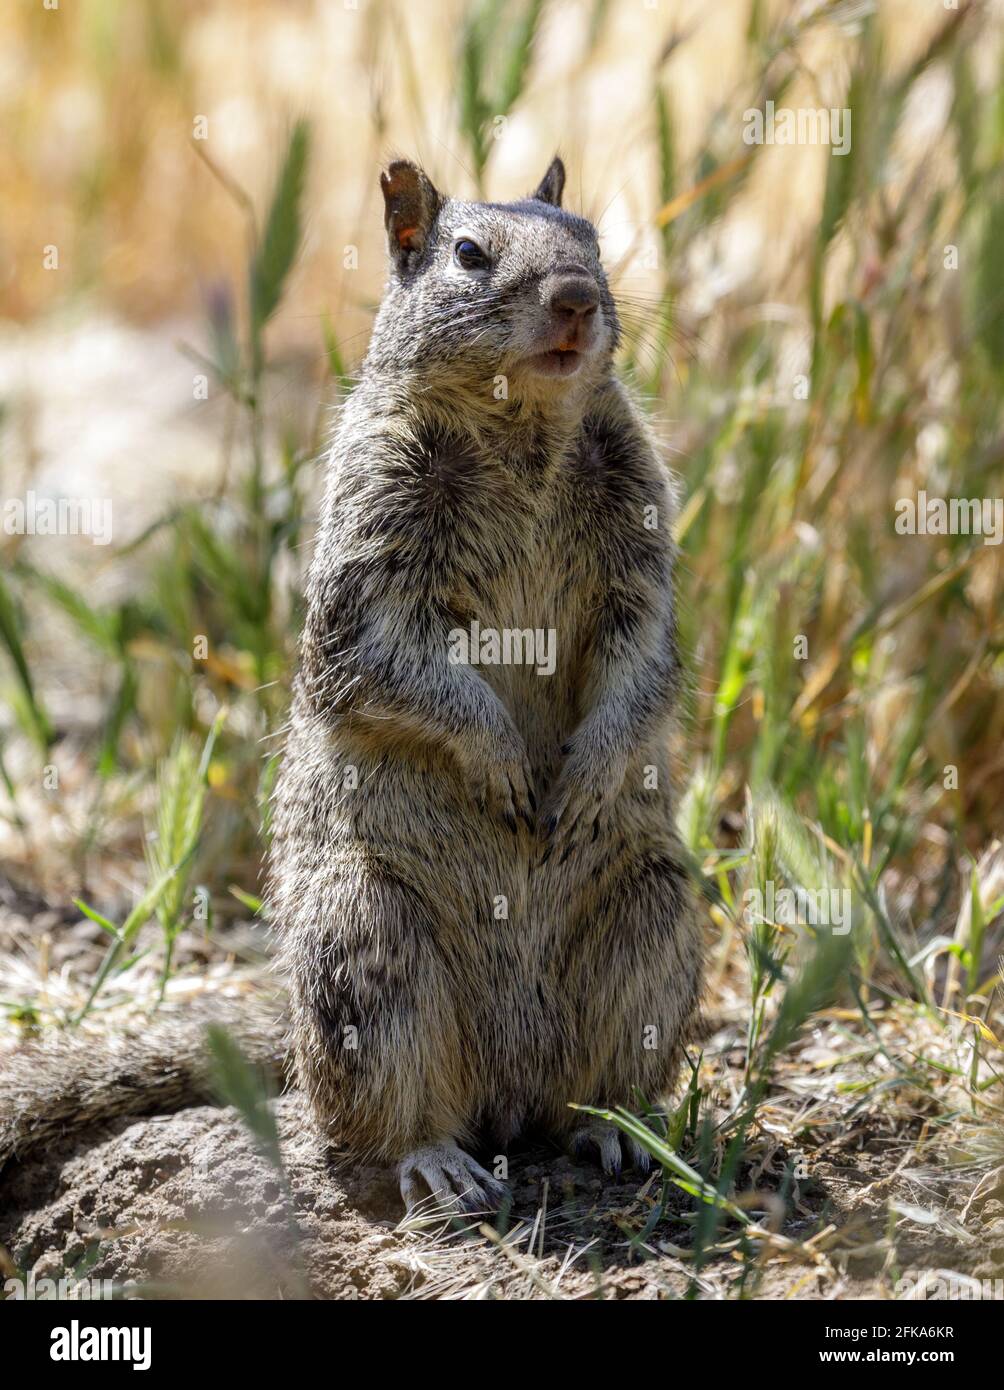 Écureuil de Californie debout sur ses pattes arrière pour améliorer l'observation. Comté de Santa Clara, Californie, États-Unis. Banque D'Images